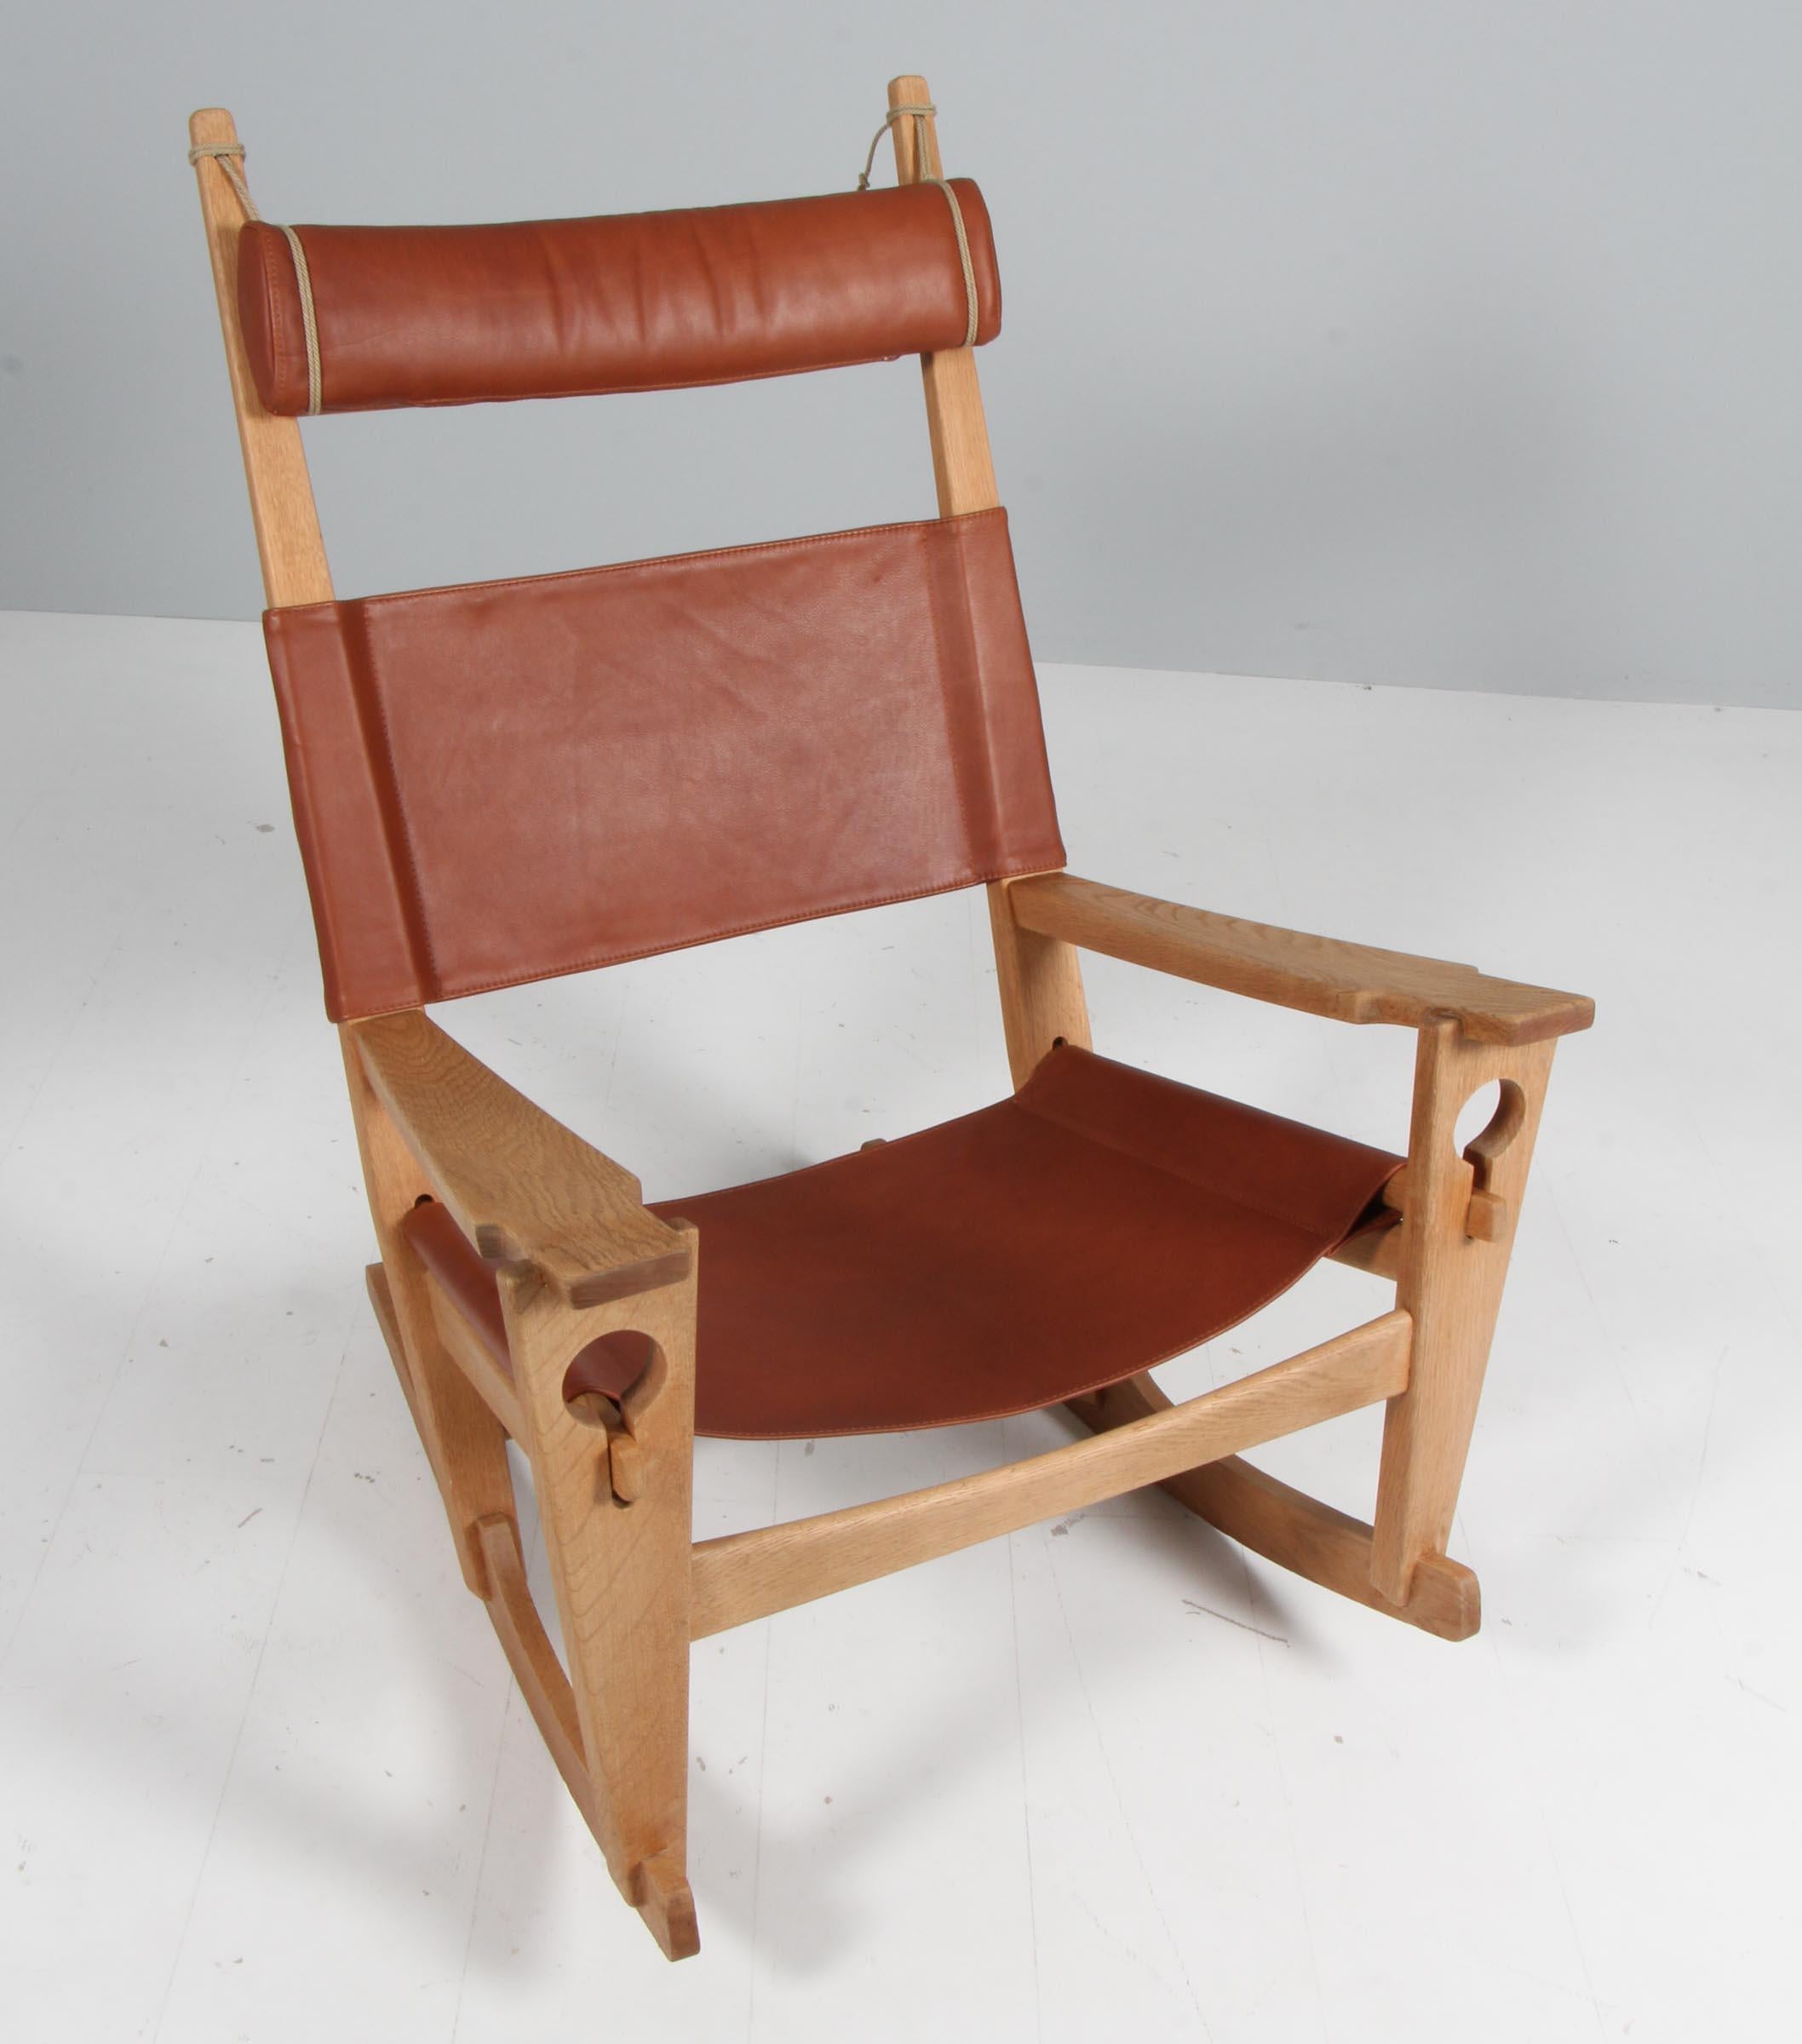 Chaise longue / rocking chair de Hans J. Wegner, nouvellement recouverte de cuir aniline couleur brandy.

Cadre en chêne traité au savon

Modèle Nøglehullet, fabriqué par GETAMA.